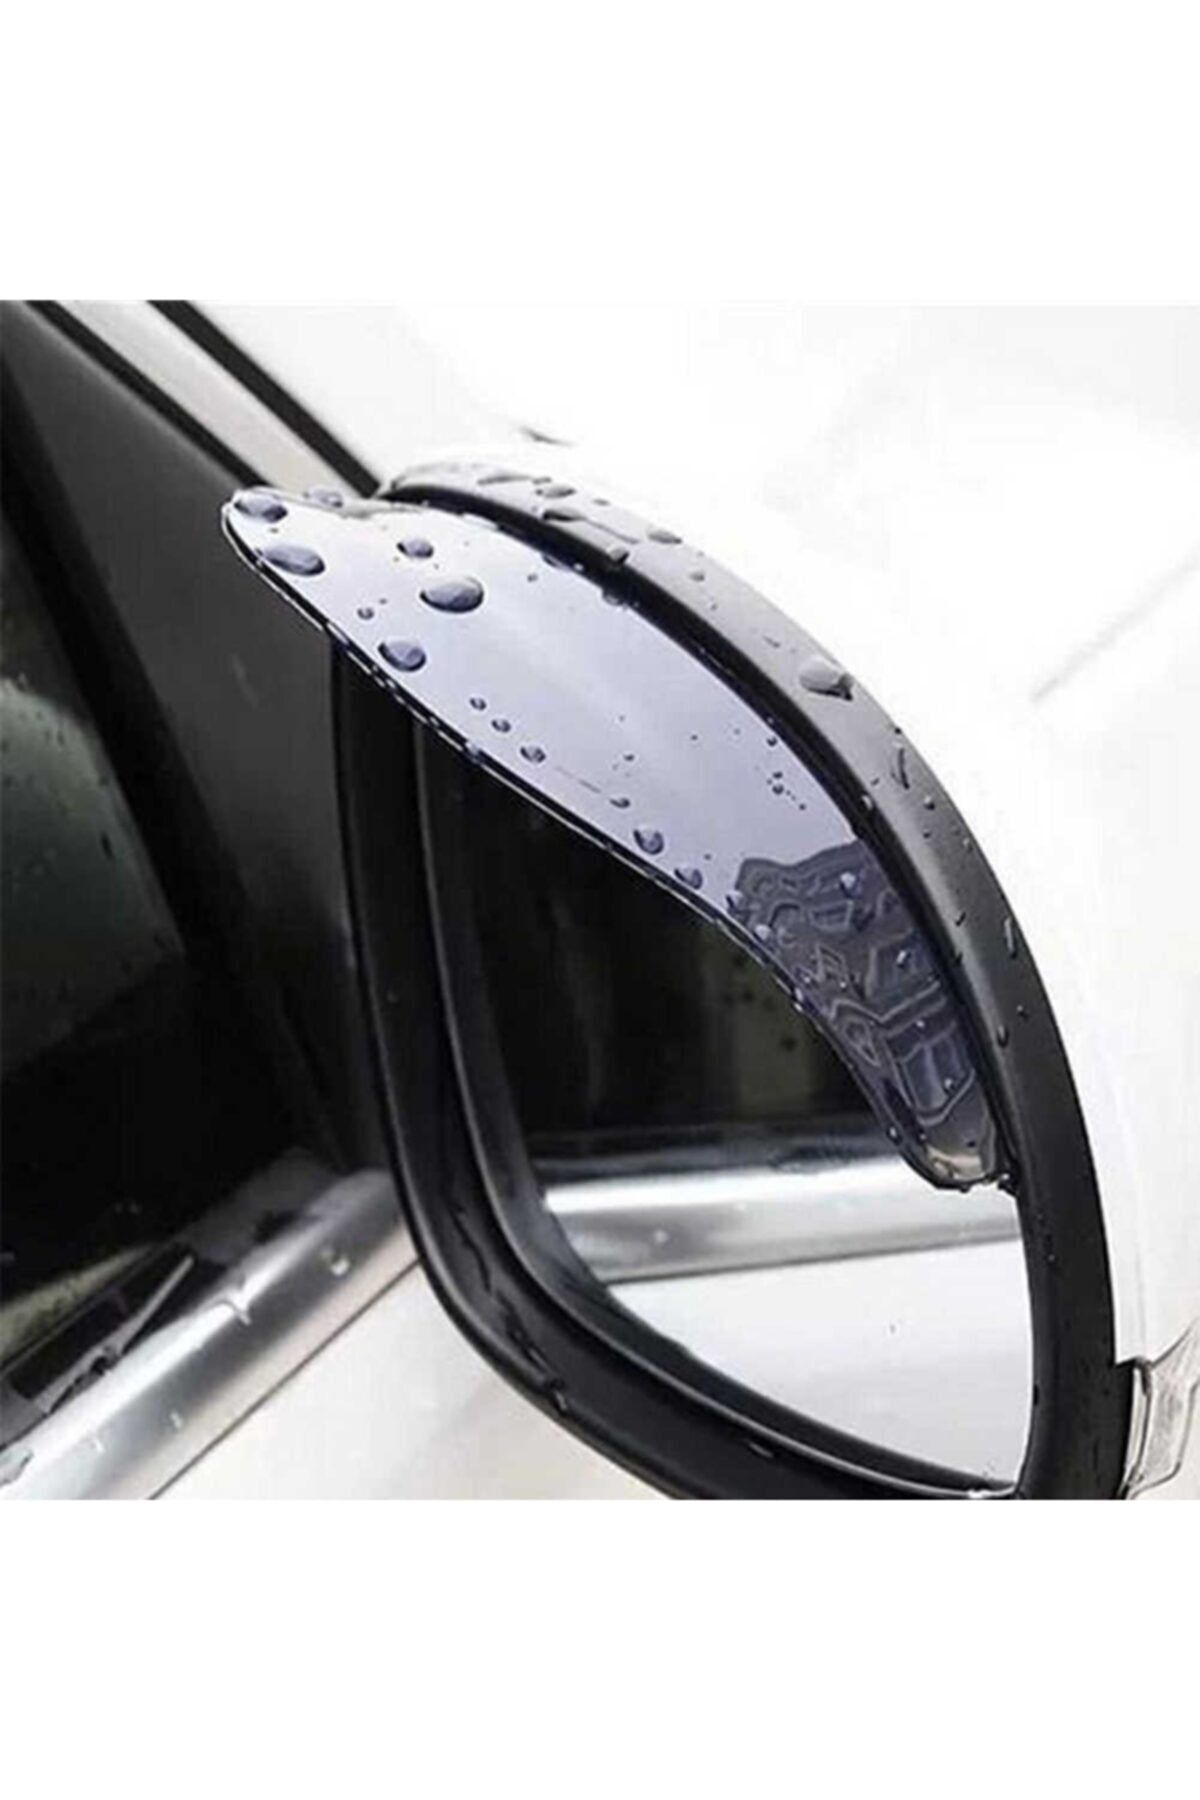 Le Moins Cher Siyah Nissan Juke Araç Ayna Yağmur Koruyucu 2 Adet